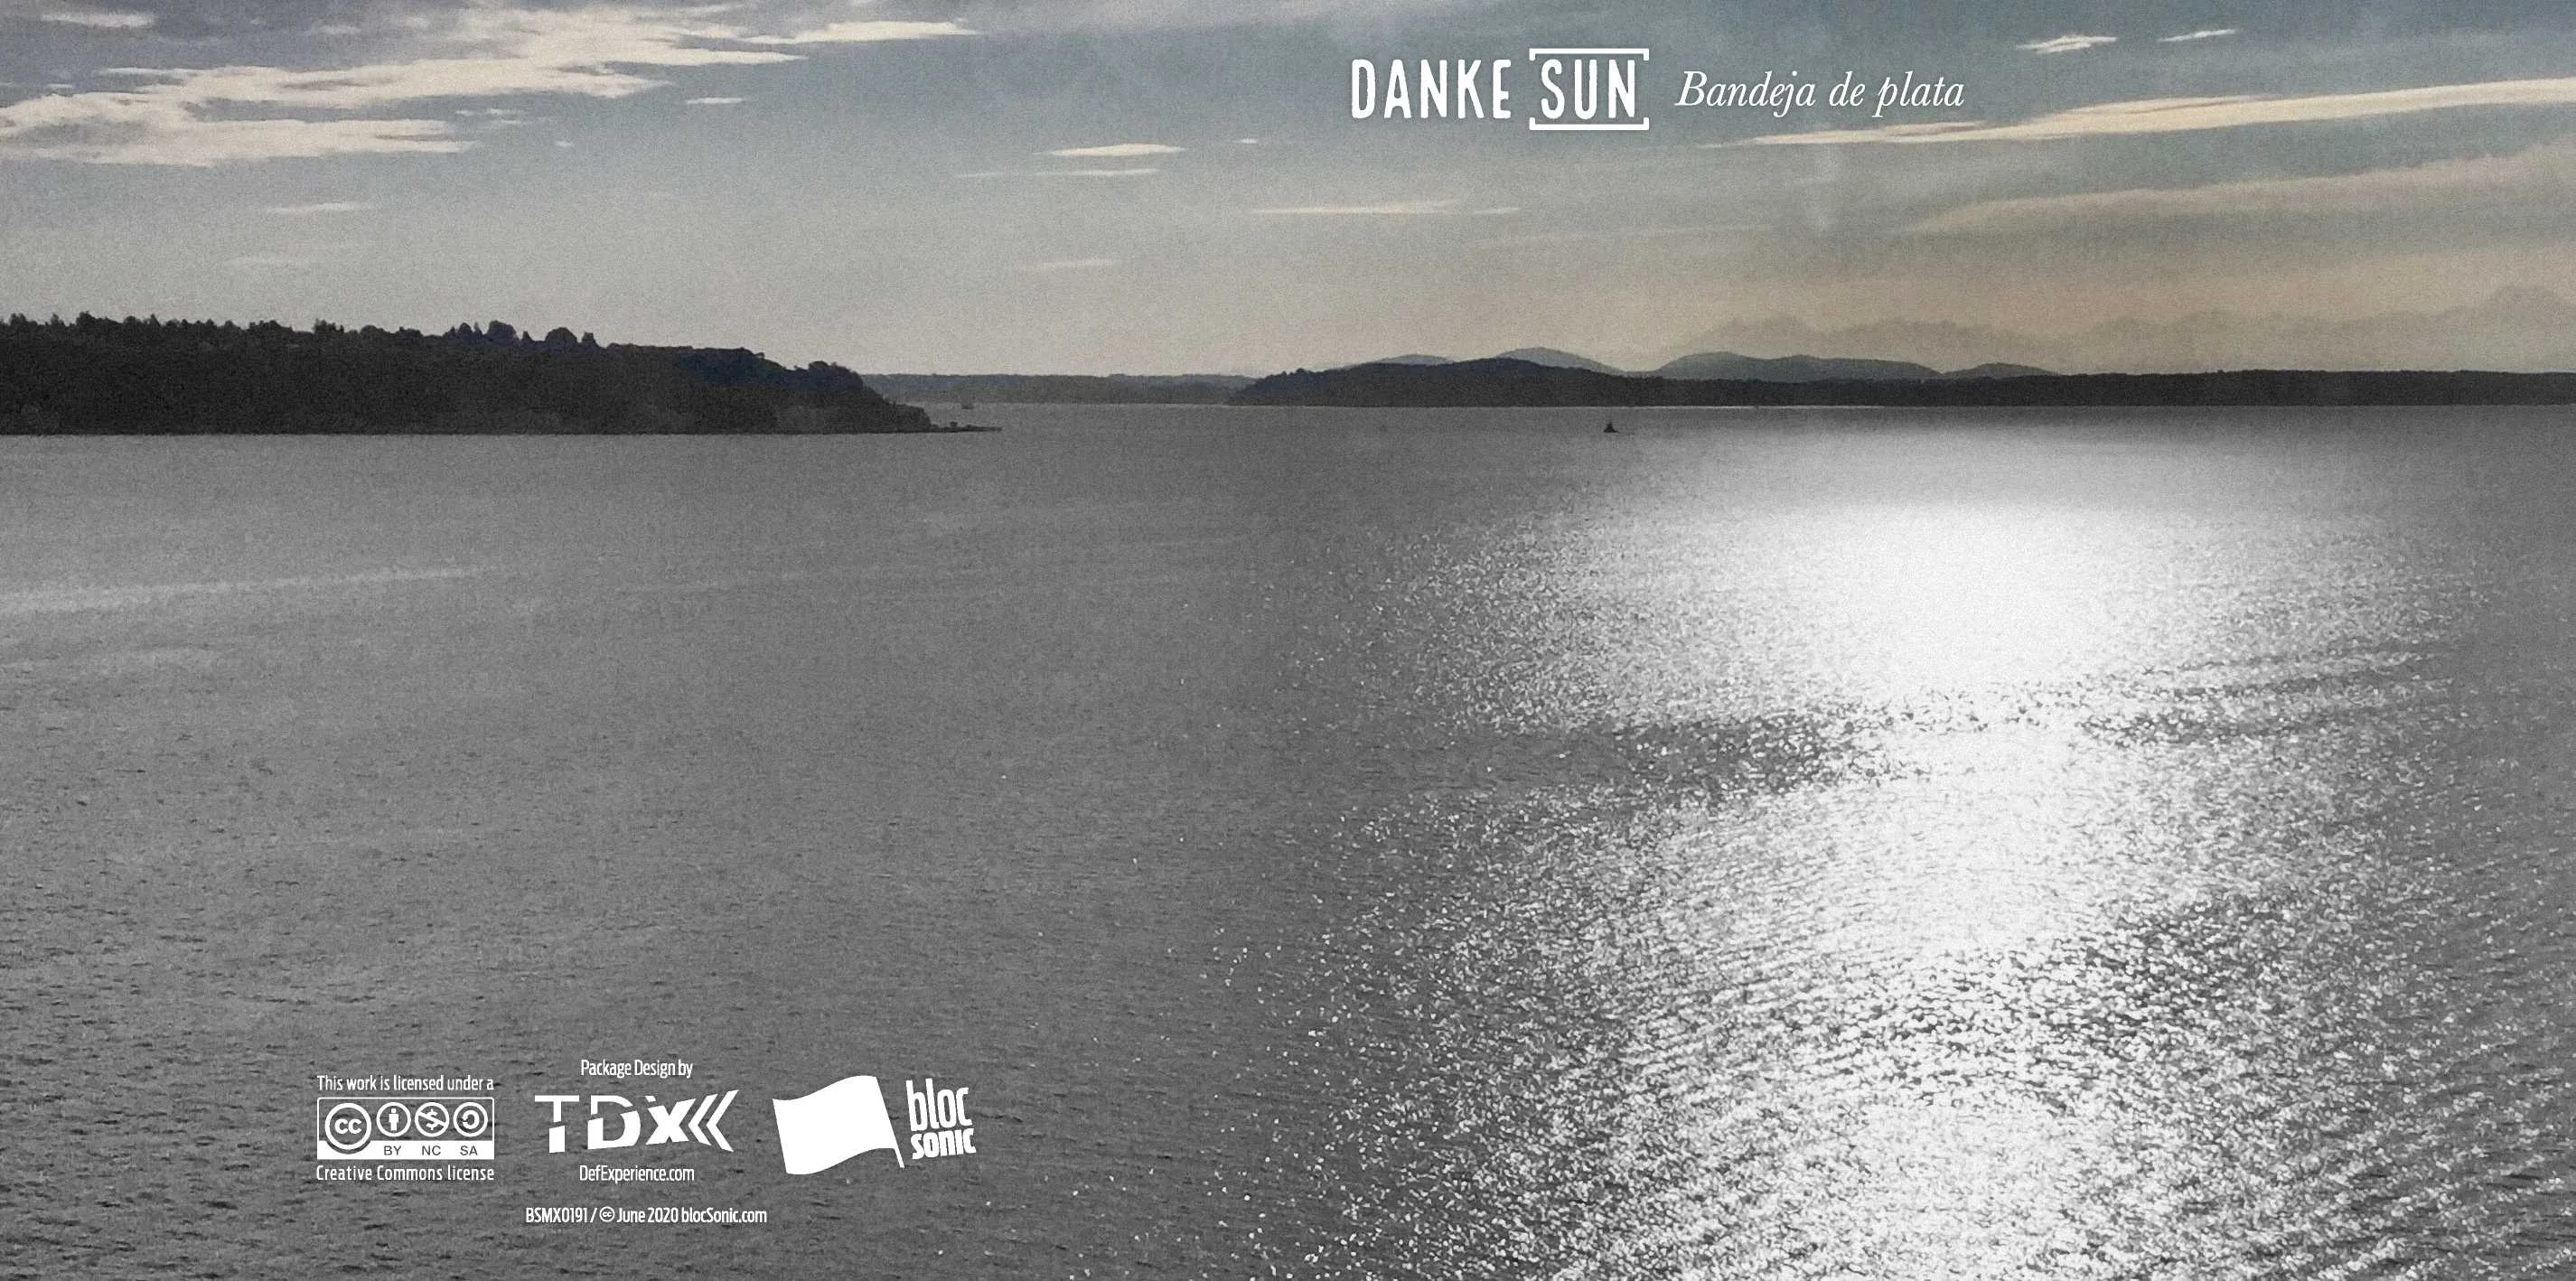 Album insert for “Bandeja de plata” by Danke Sun